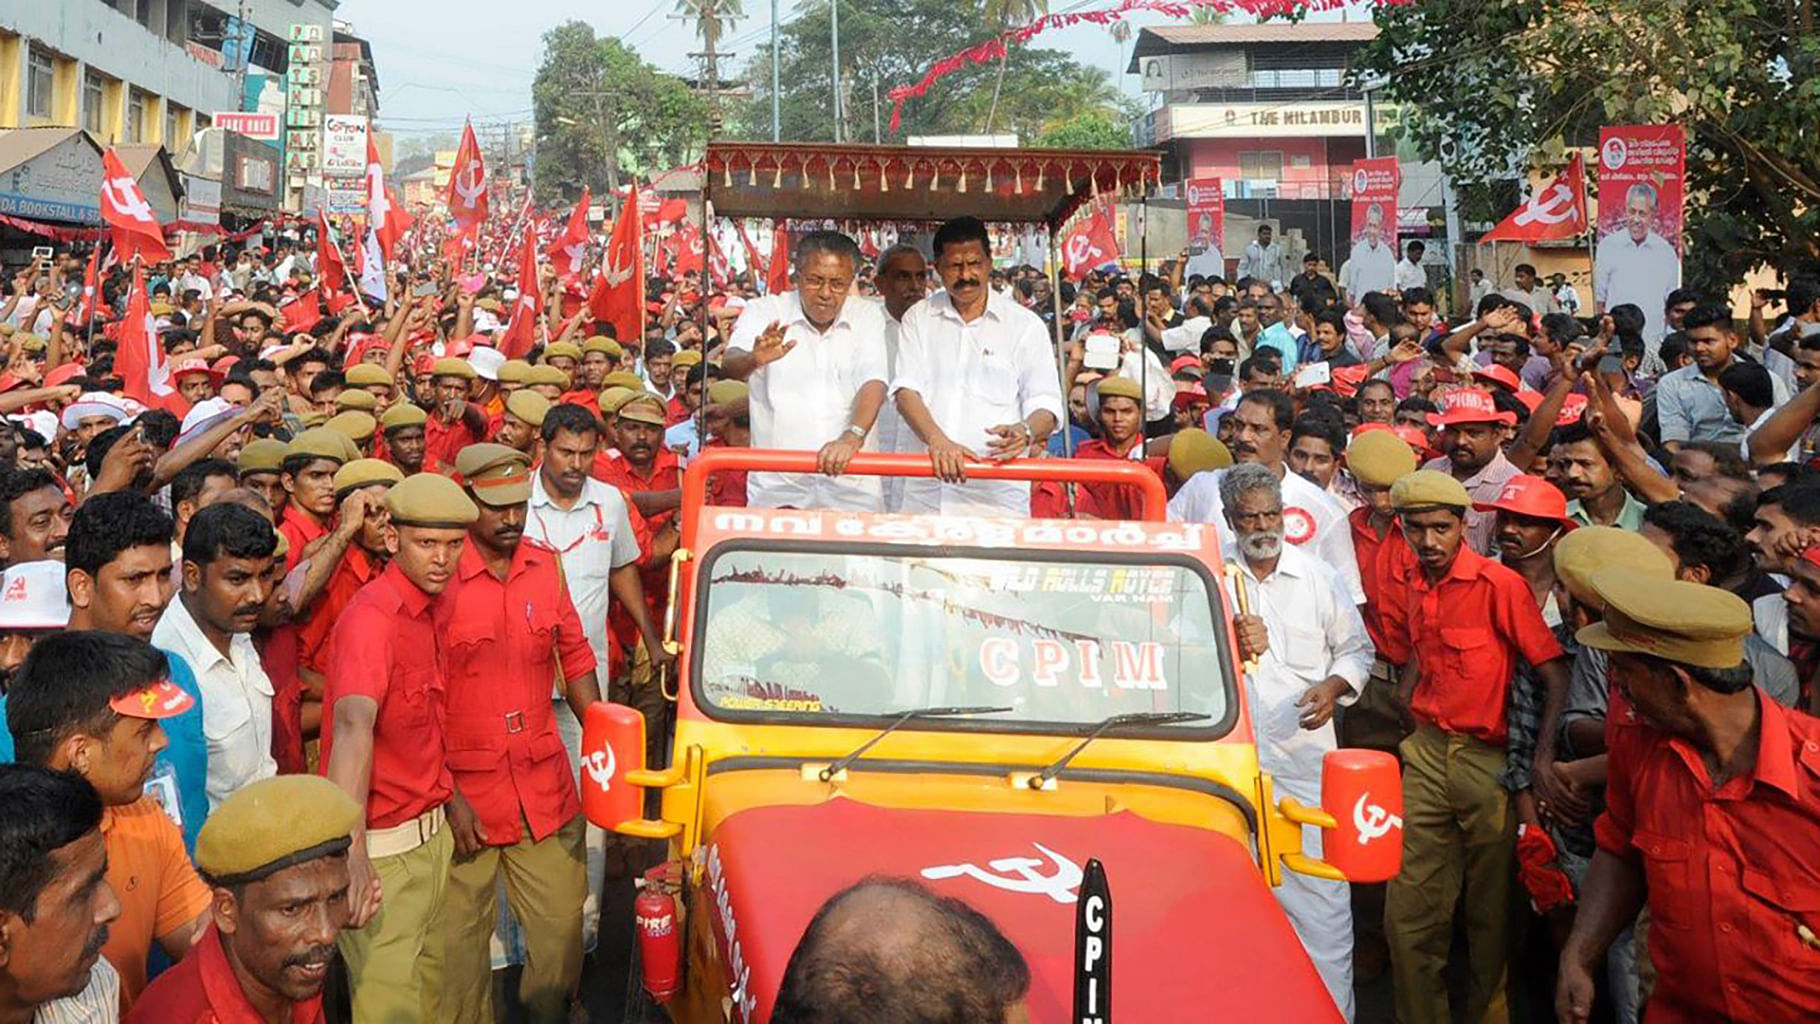 CPI-M leader Pinarayi Vijayan at a rally. (Photo: <a href="https://www.facebook.com/PinarayVijayan/photos/pb.539381006153734.-2207520000.1454327417./946345578790606/?type=3&amp;theater">Facebook</a>)